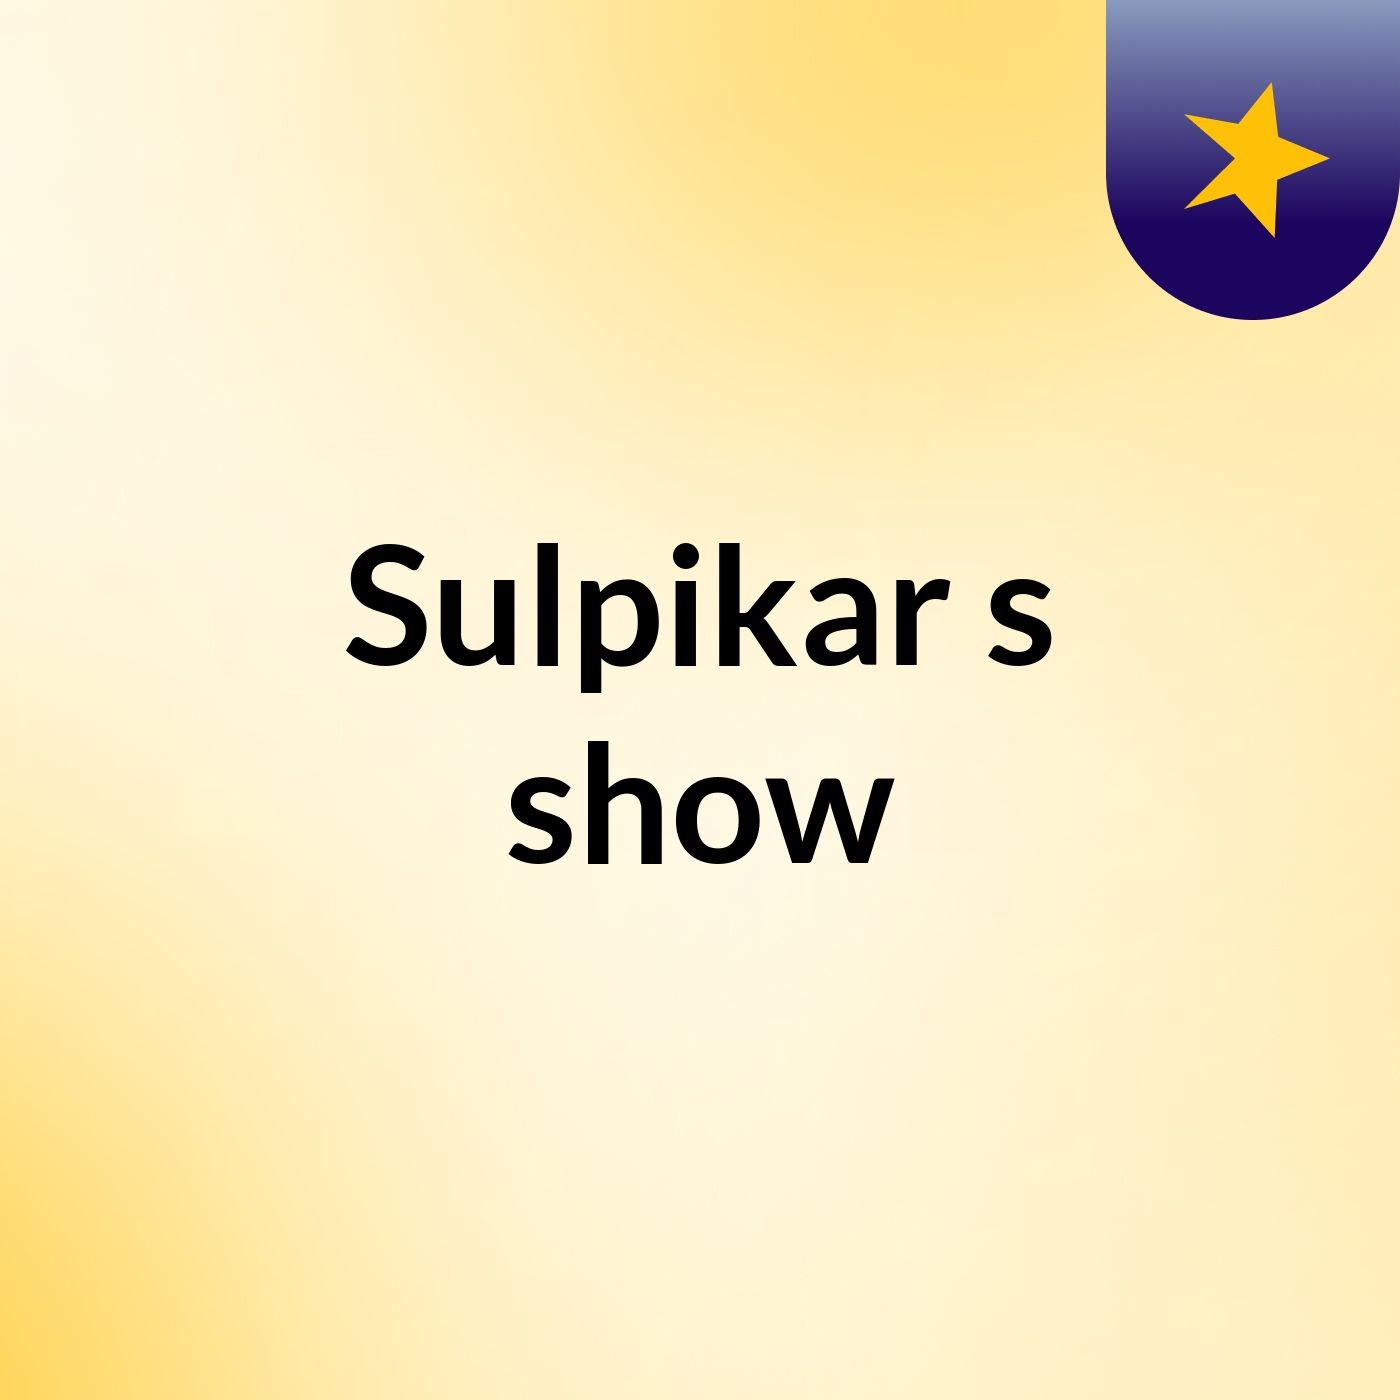 Sulpikar's show